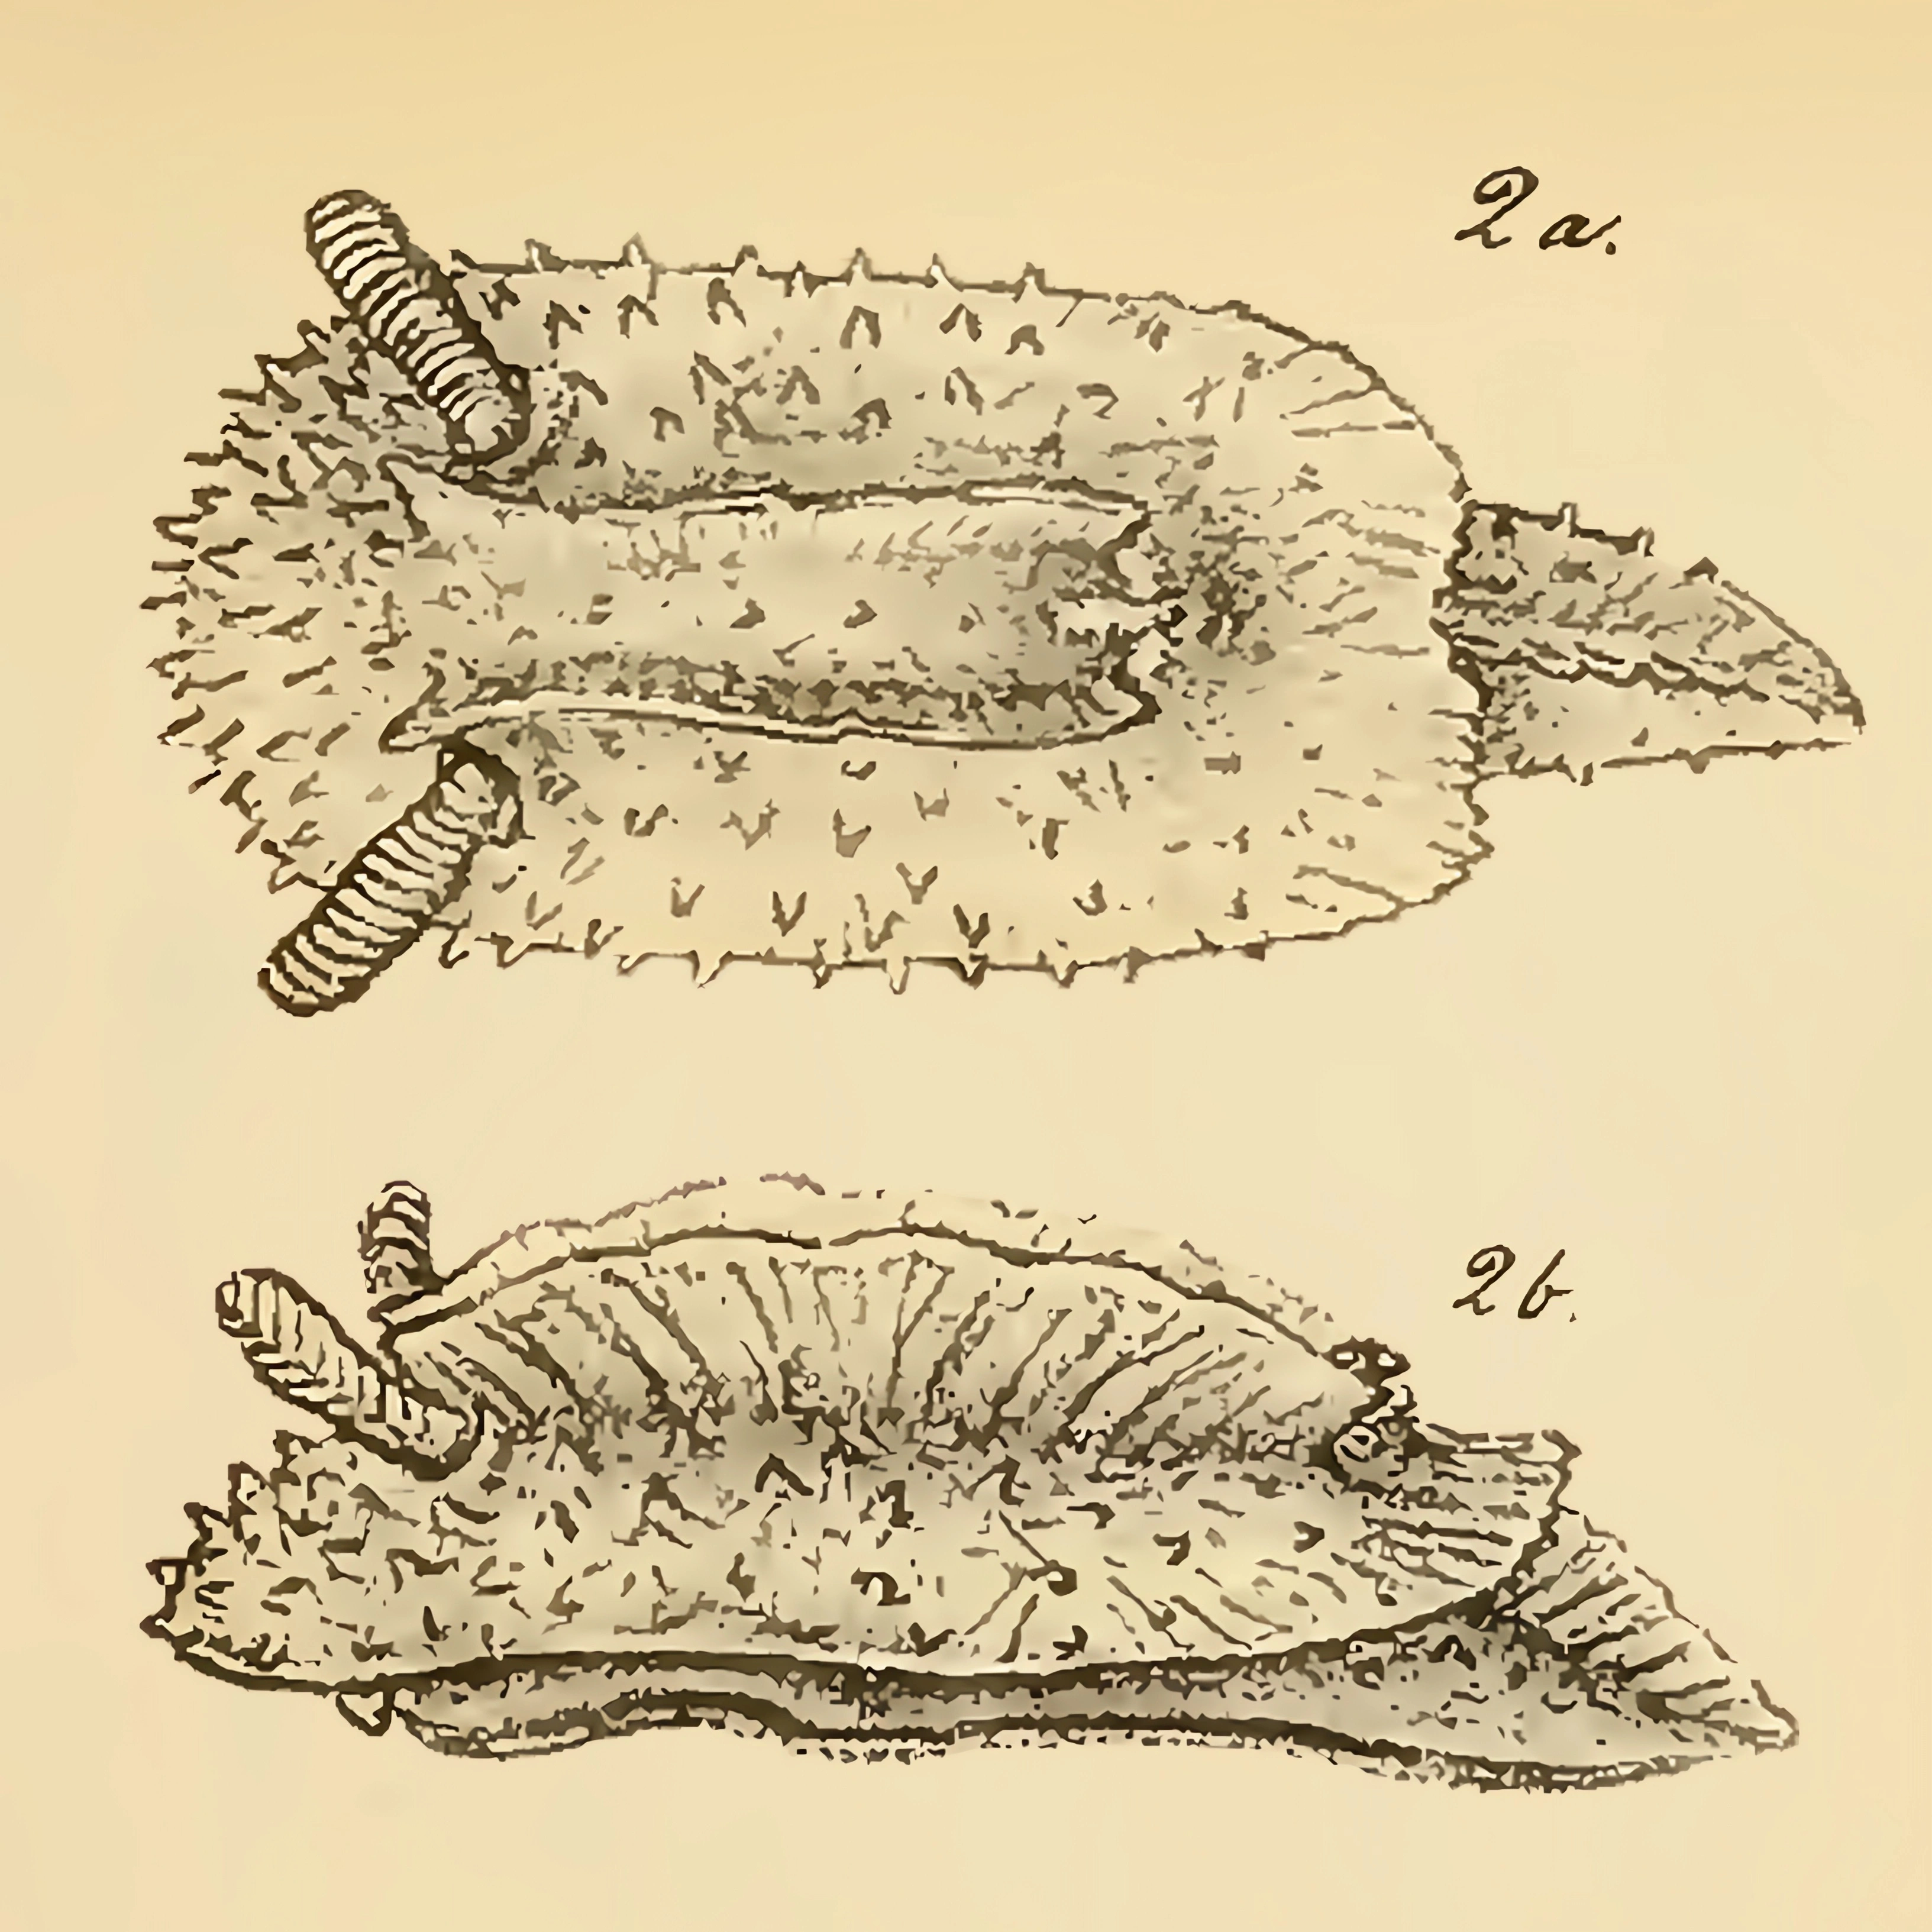 Bløtdyr: Doridunculus echinulatus.